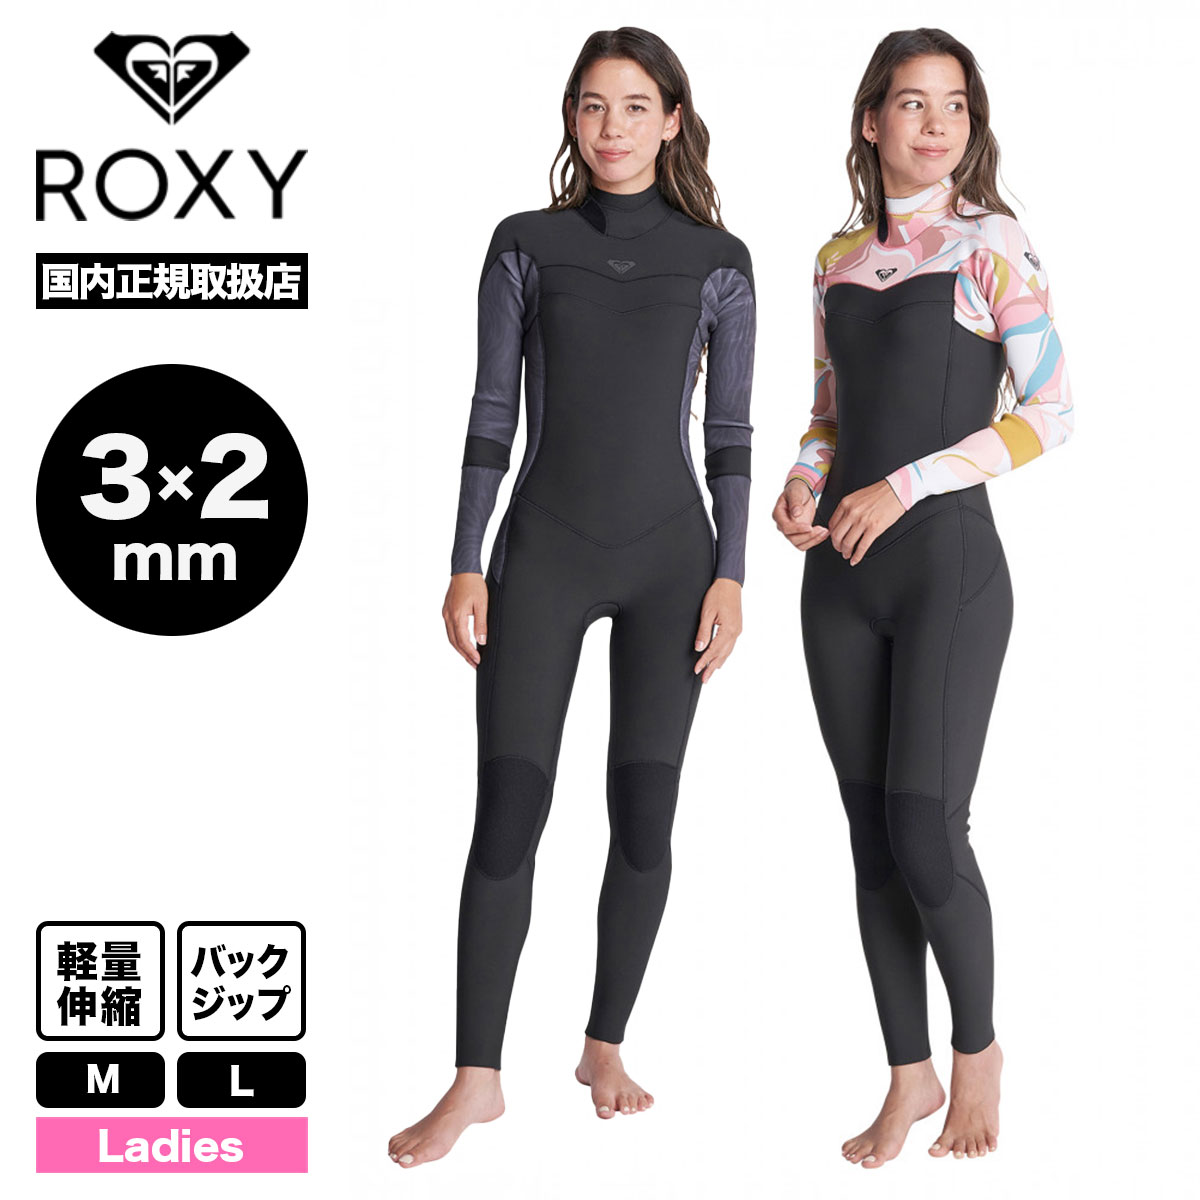 ROXY ウェットスーツ - サーフィン